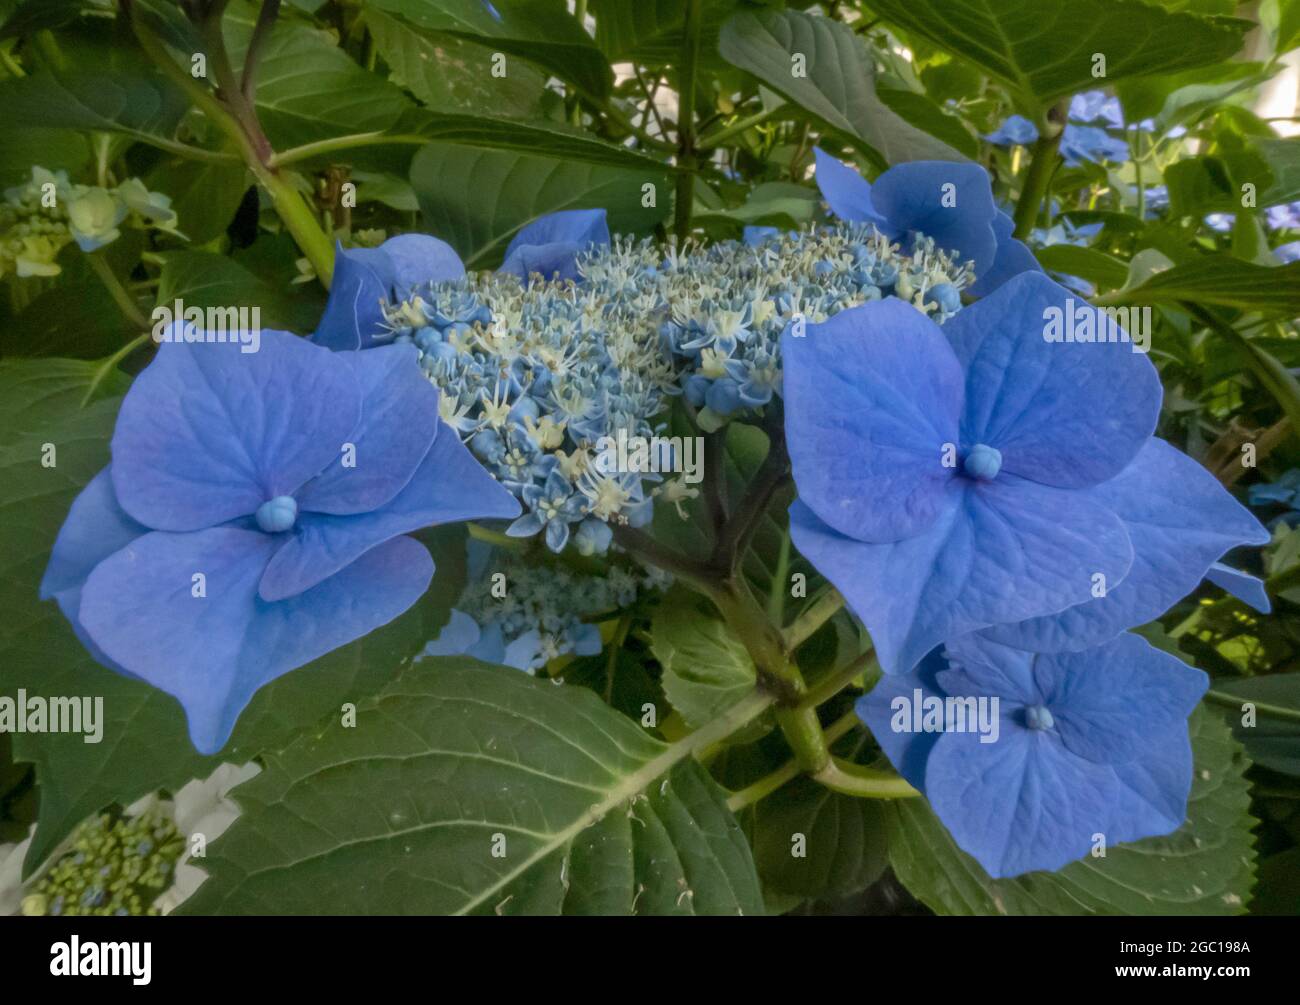 Garden hydrangea, Lace cap hydrangea (Hydrangea macrophylla), blue hydrangea flowers, Germany Stock Photo